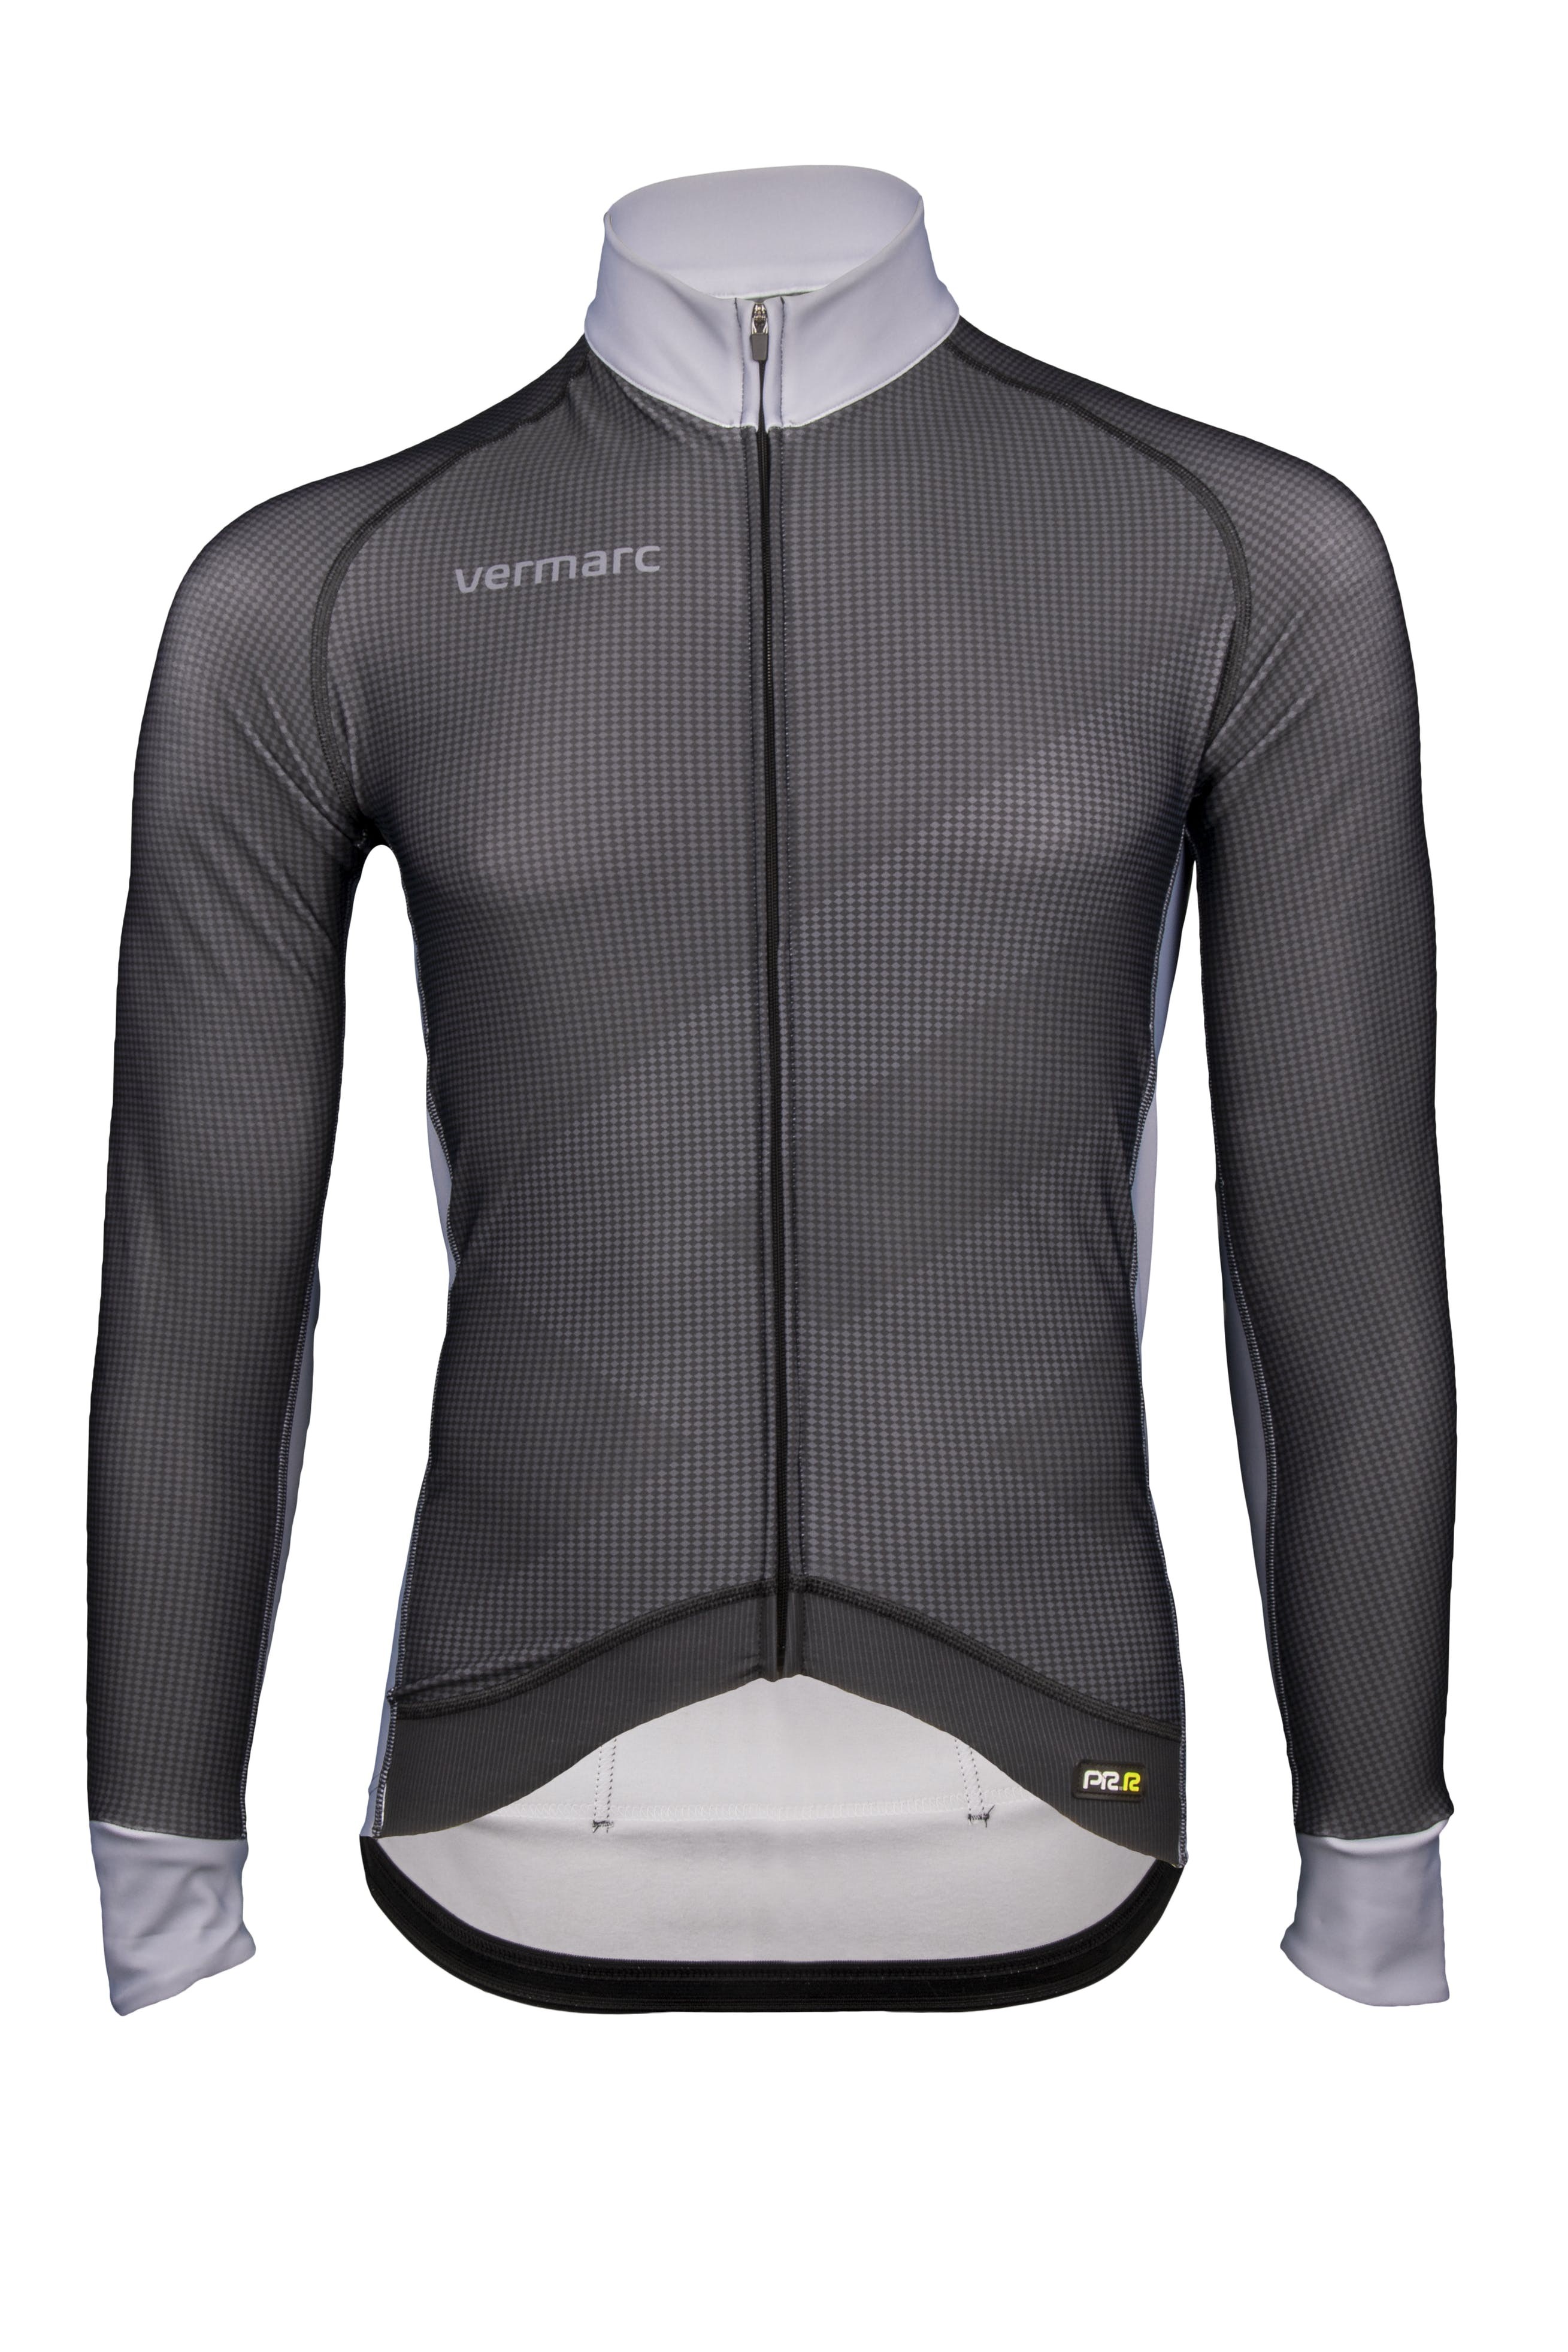 Vermarc zigzag fietsshirt met lange mouwen zwart grijs